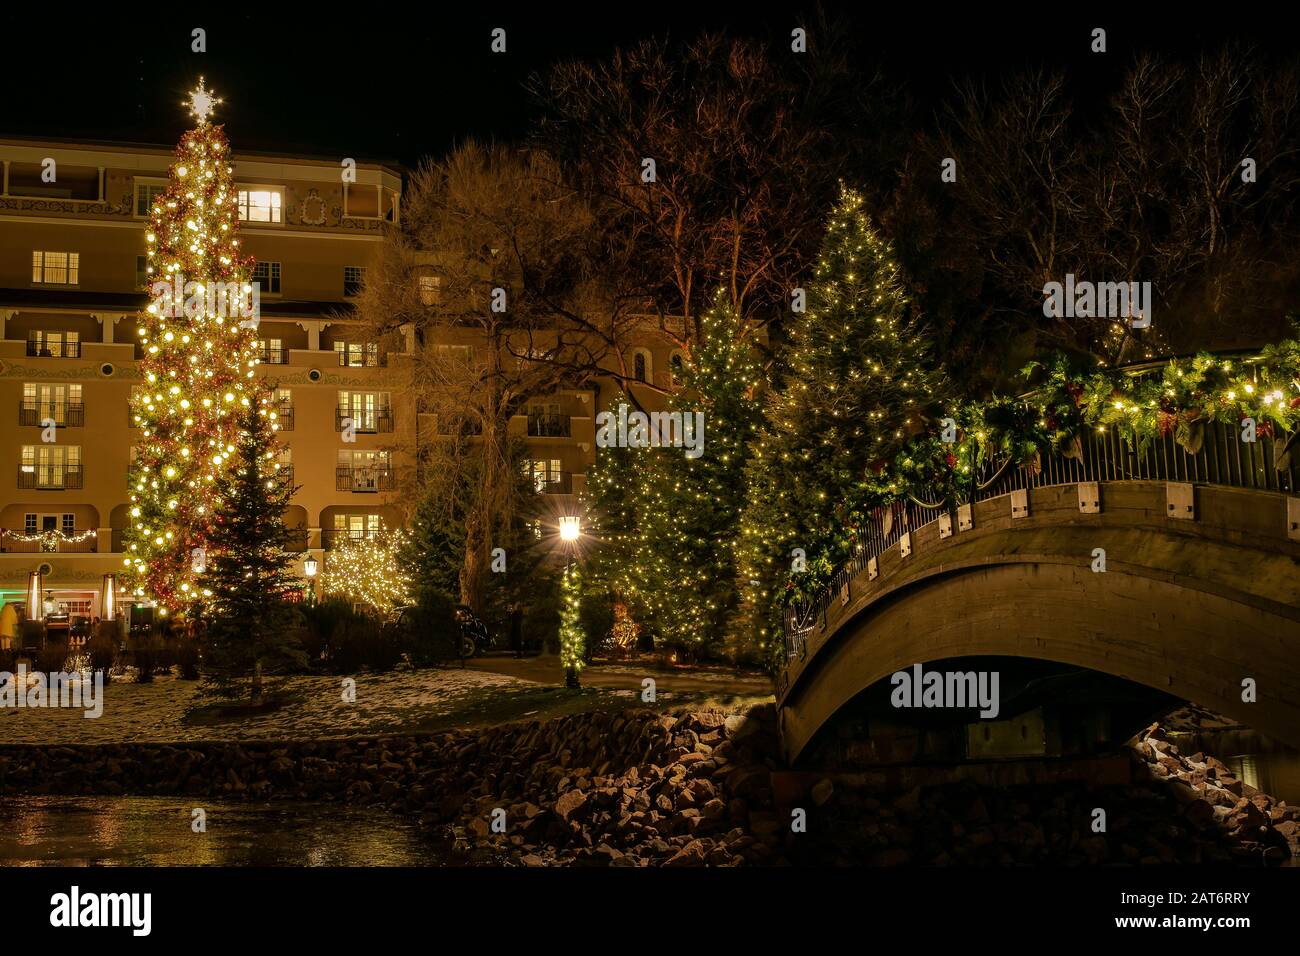 Das Broadmoor Hotel in Colorado Springs, CO, ist ein beliebtes Ziel zu Weihnachten, das für seine schönen Außenanlagen und festlichen Lichtauslagen bekannt ist. Stockfoto